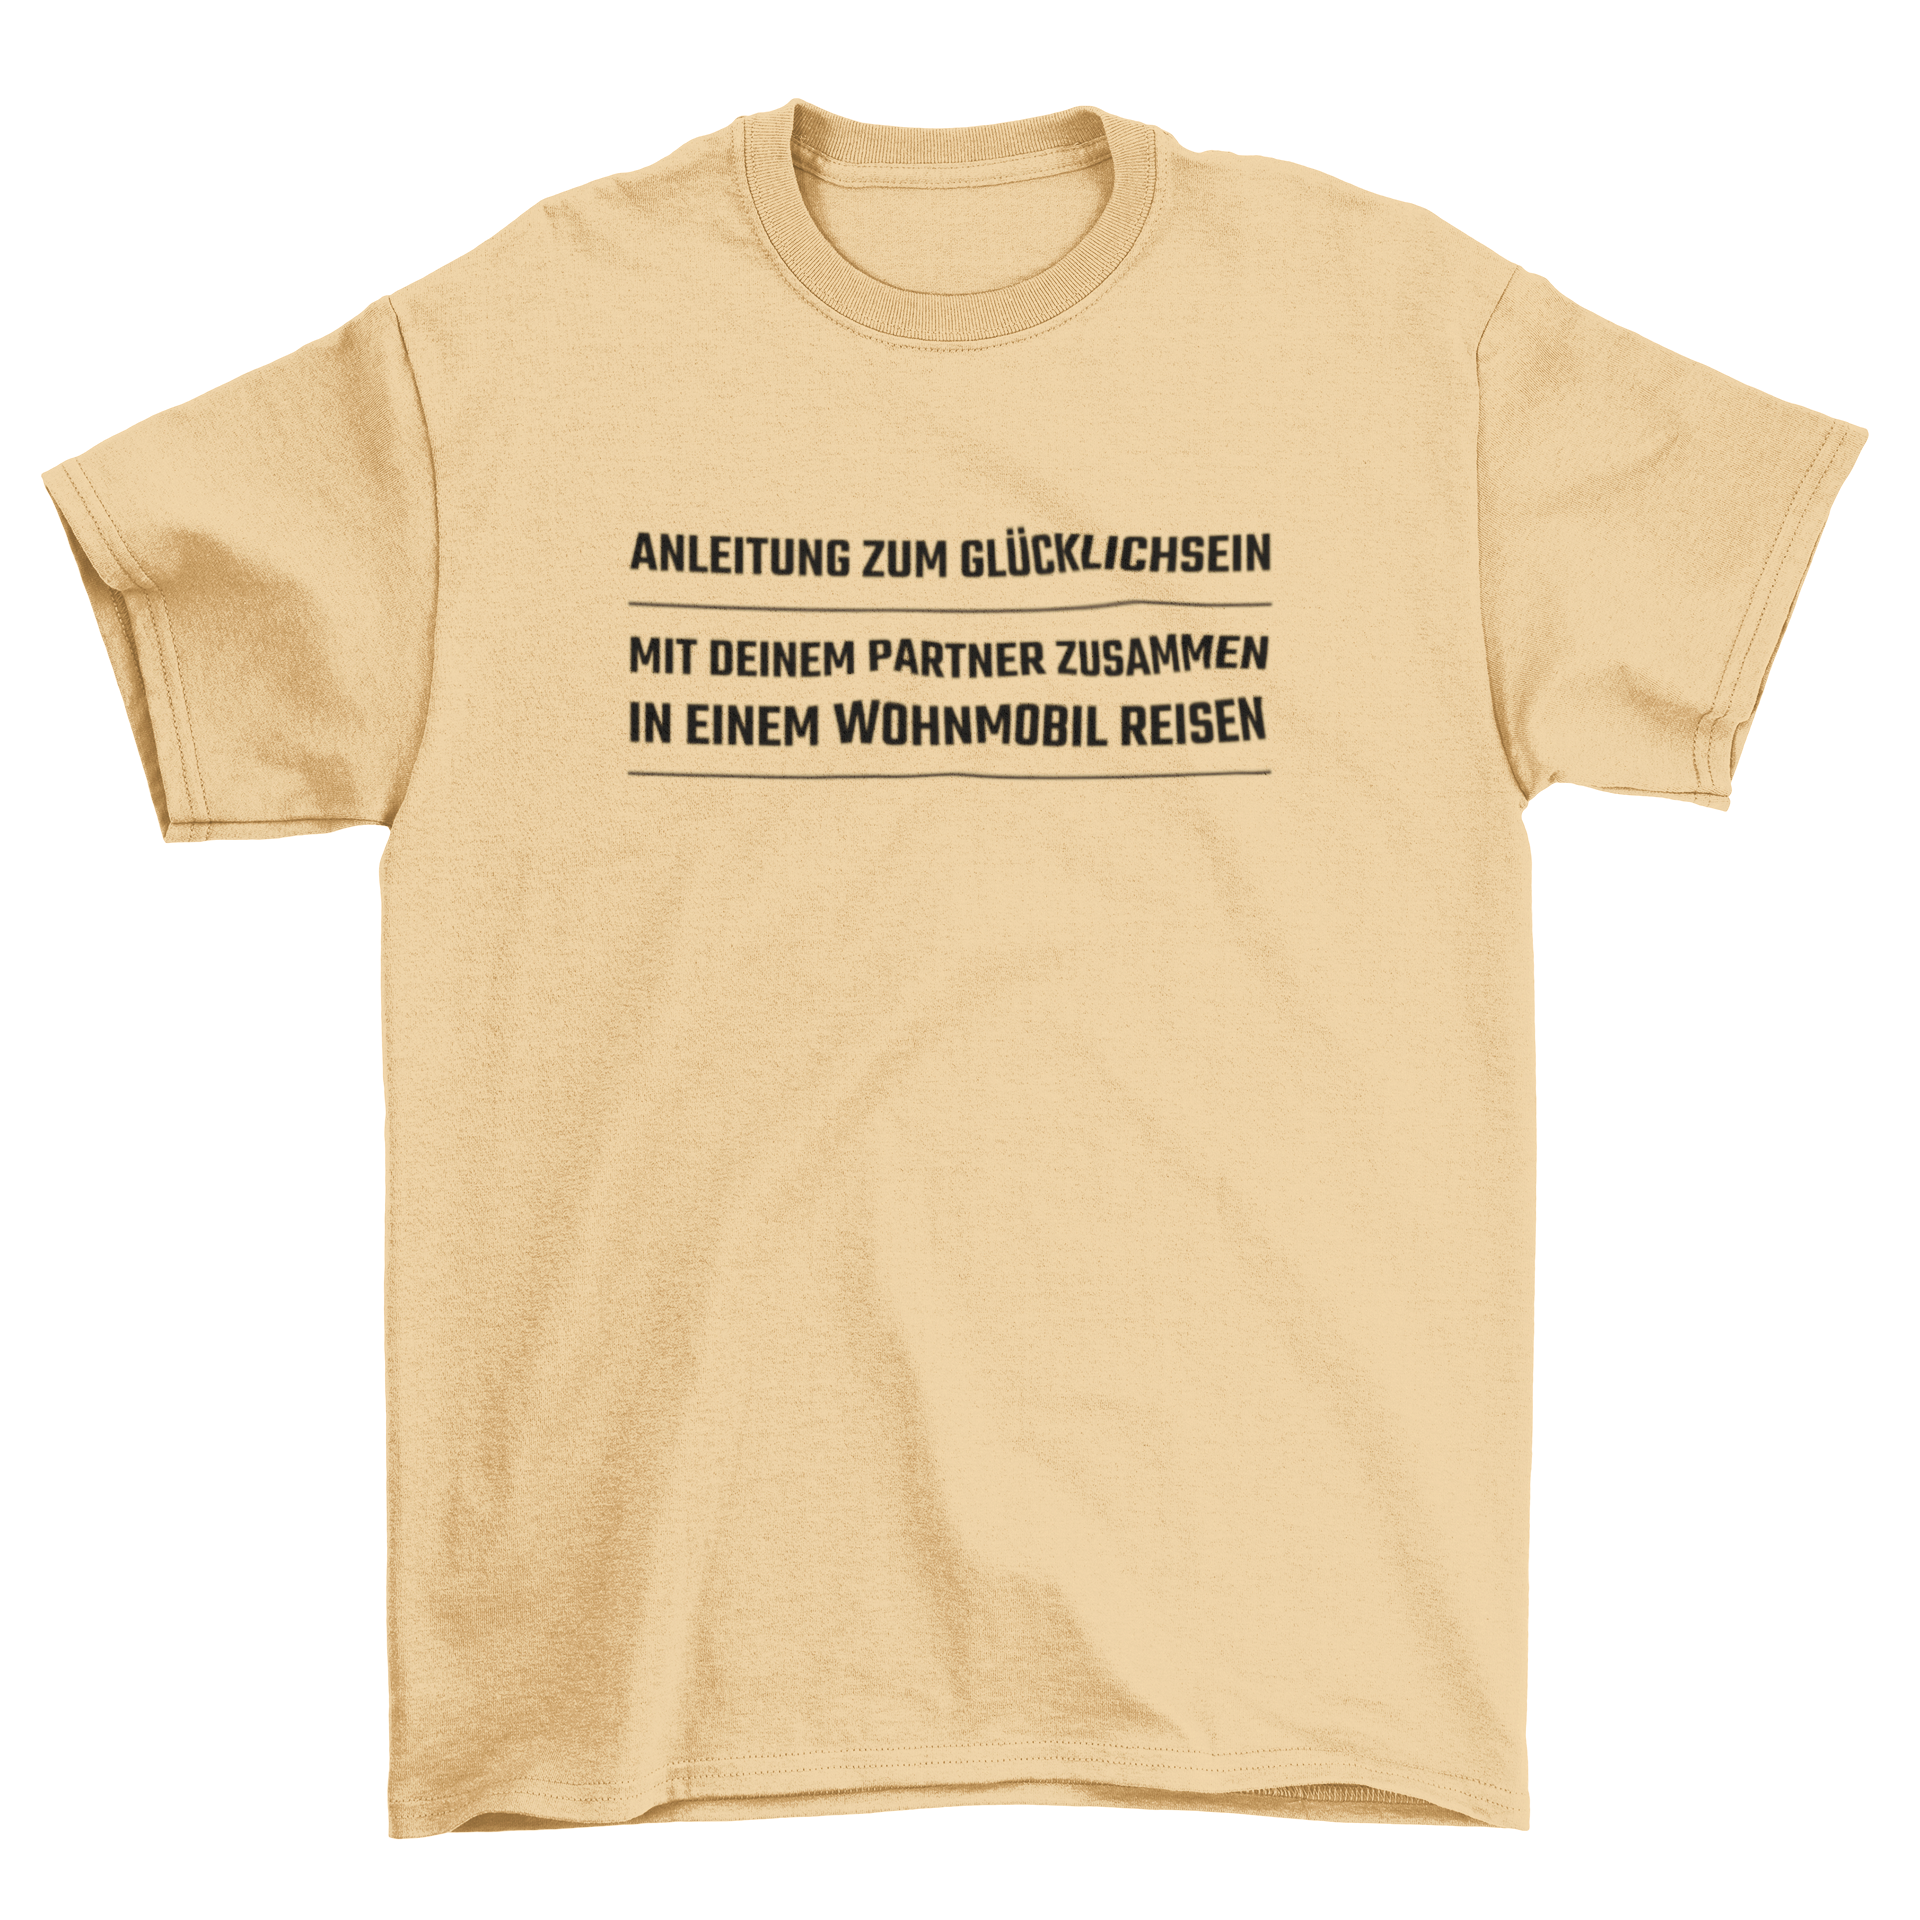 Anleitung zum Glücklichsein  -  T-Shirt